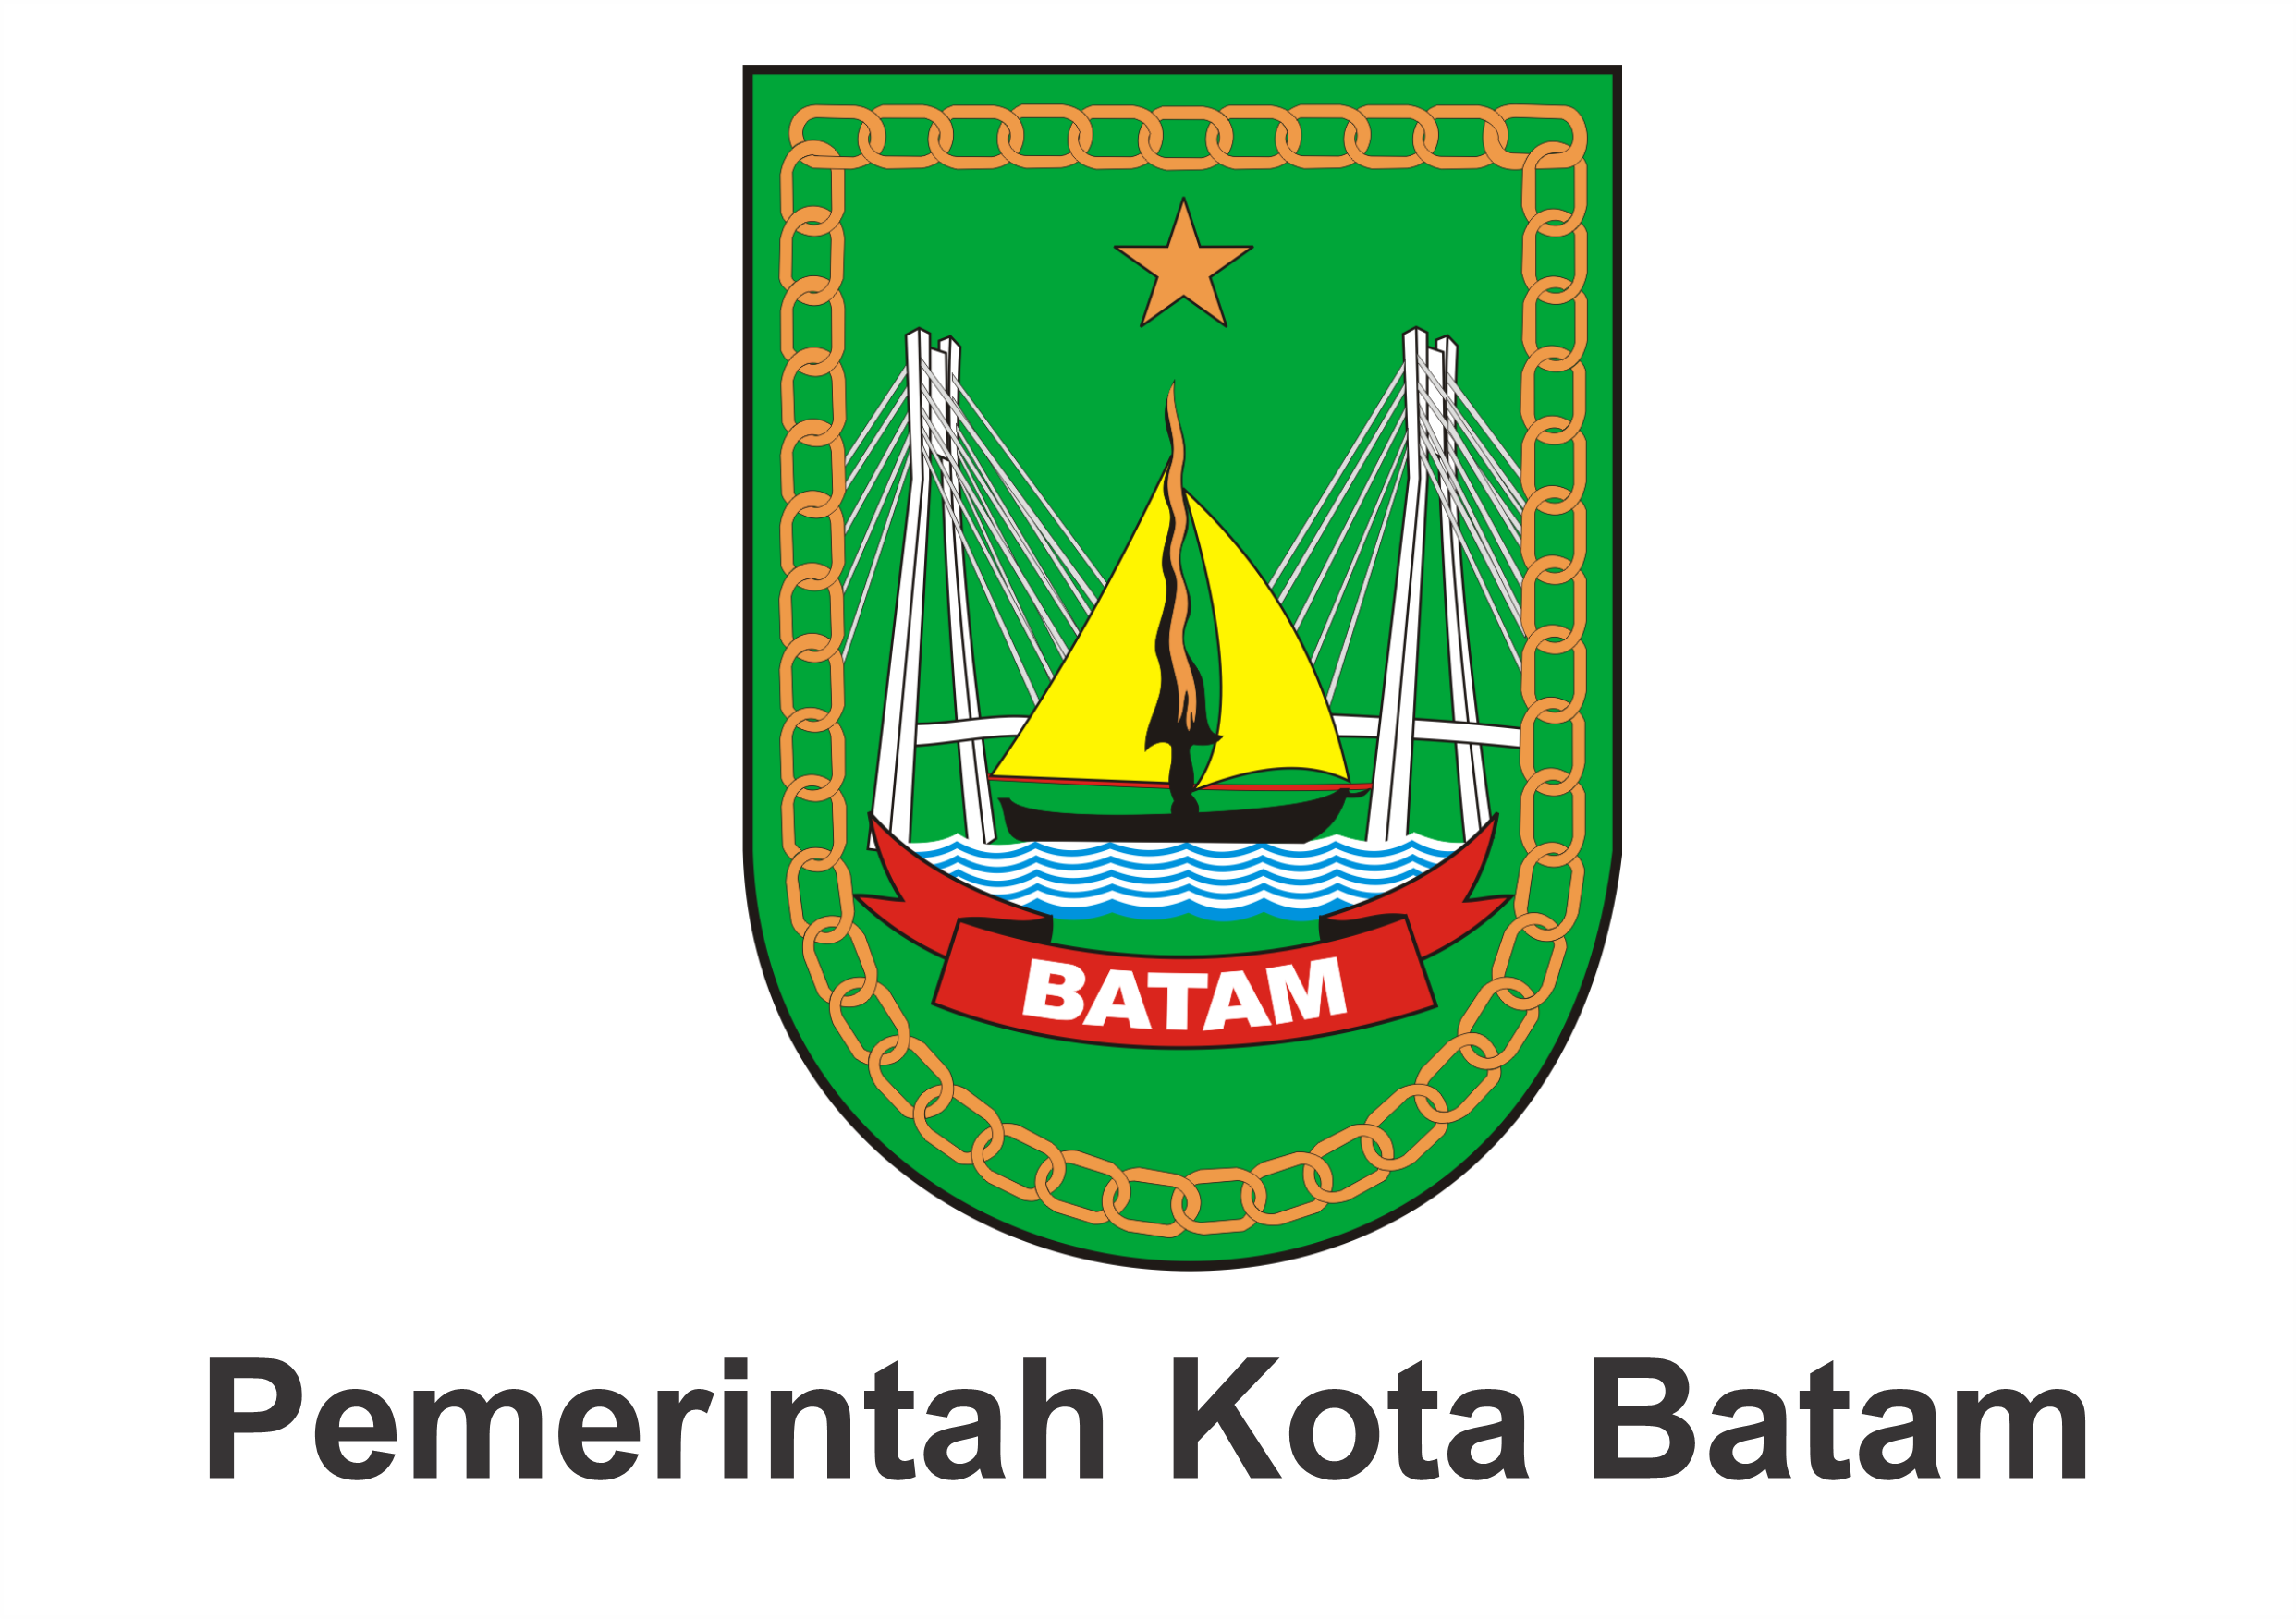 Pemerintah Kota Batam